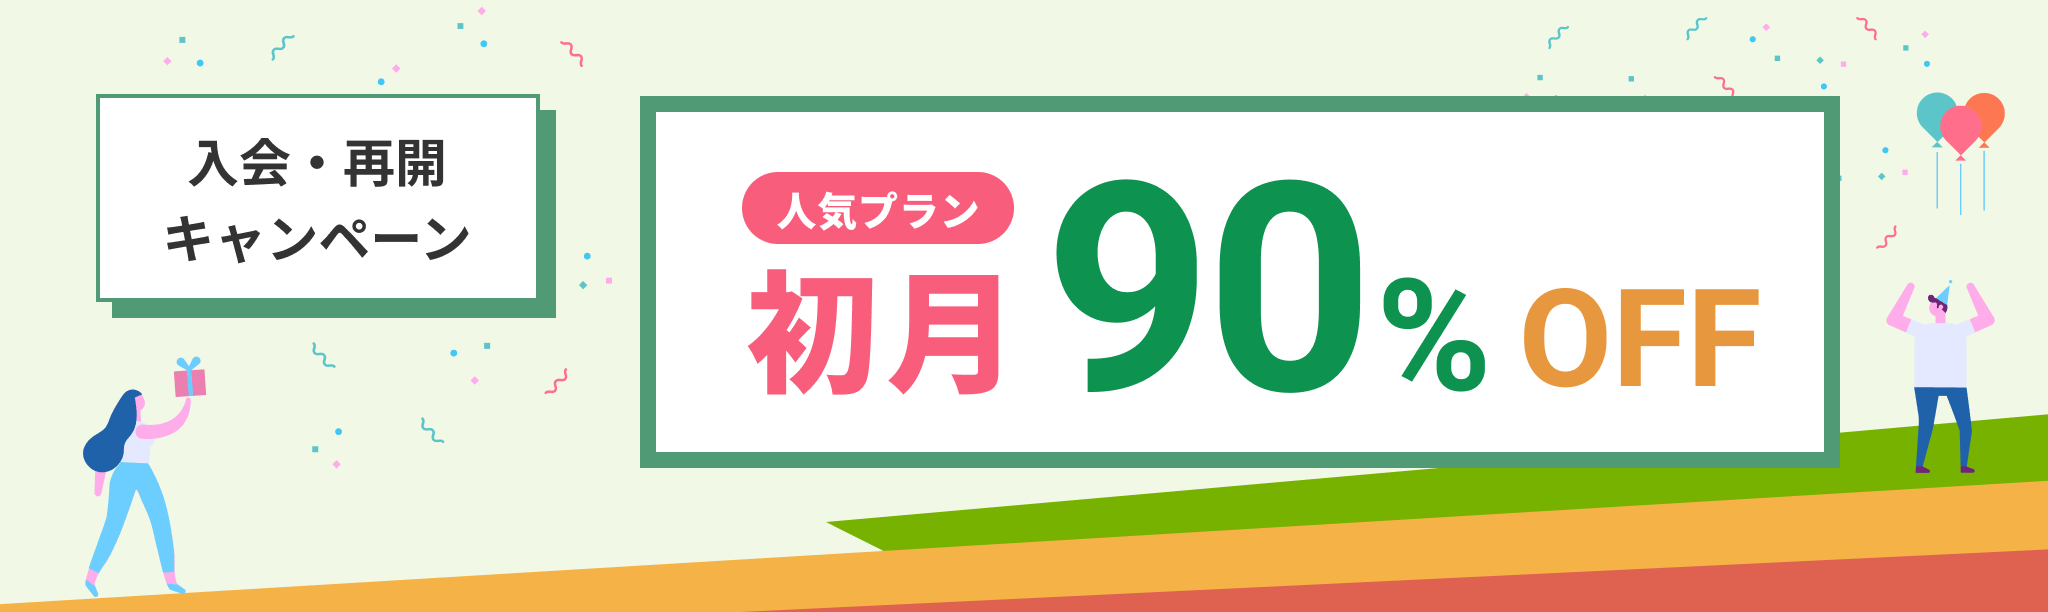 入会・再開キャンペーン 初月90%OFF